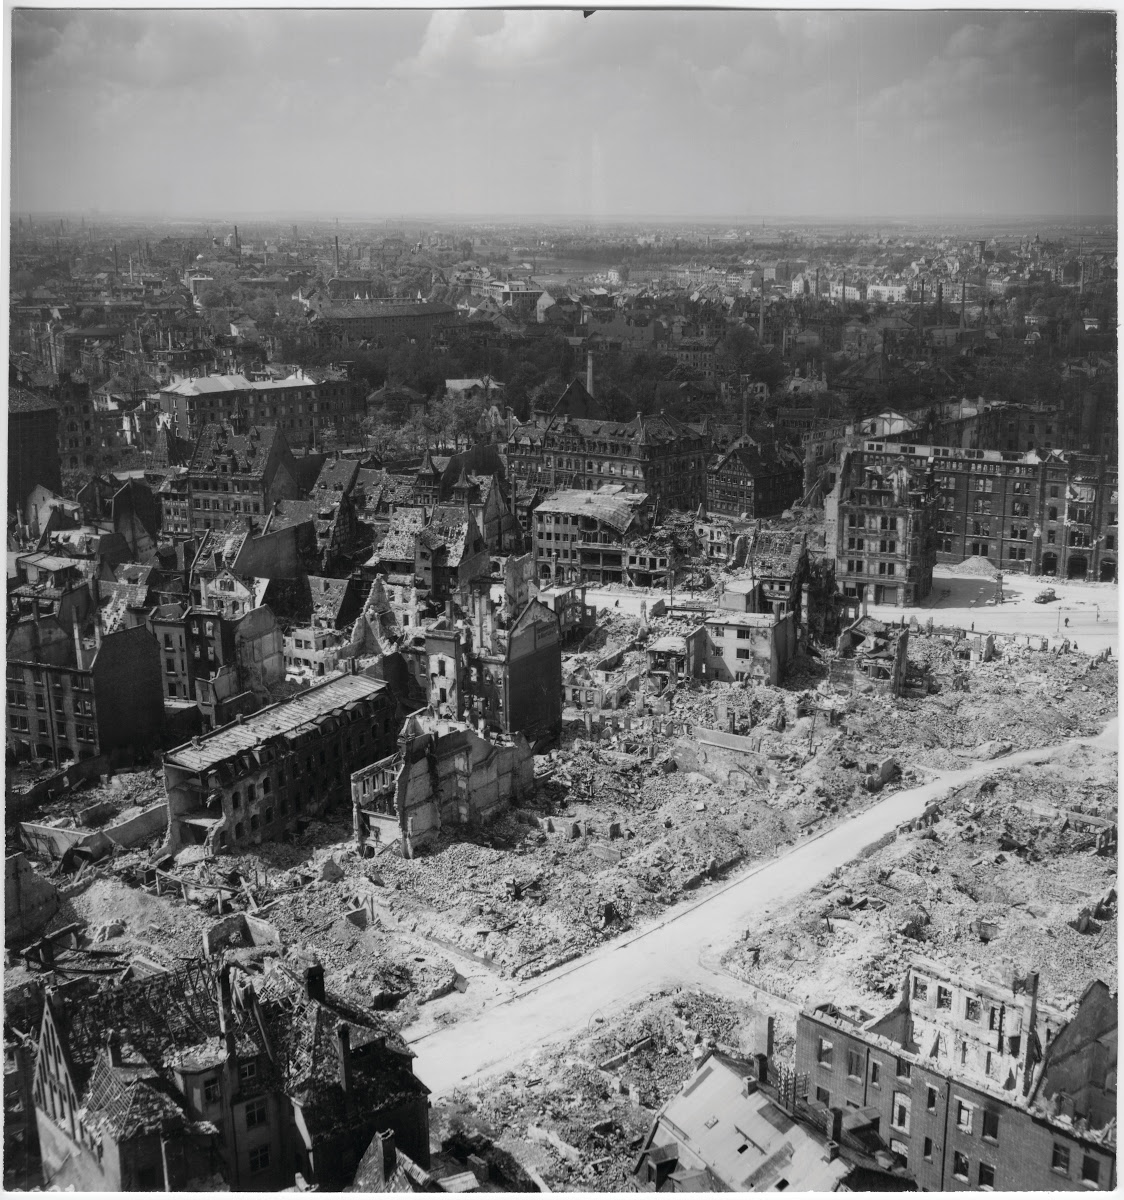 Bombing Of Ulm In World War II